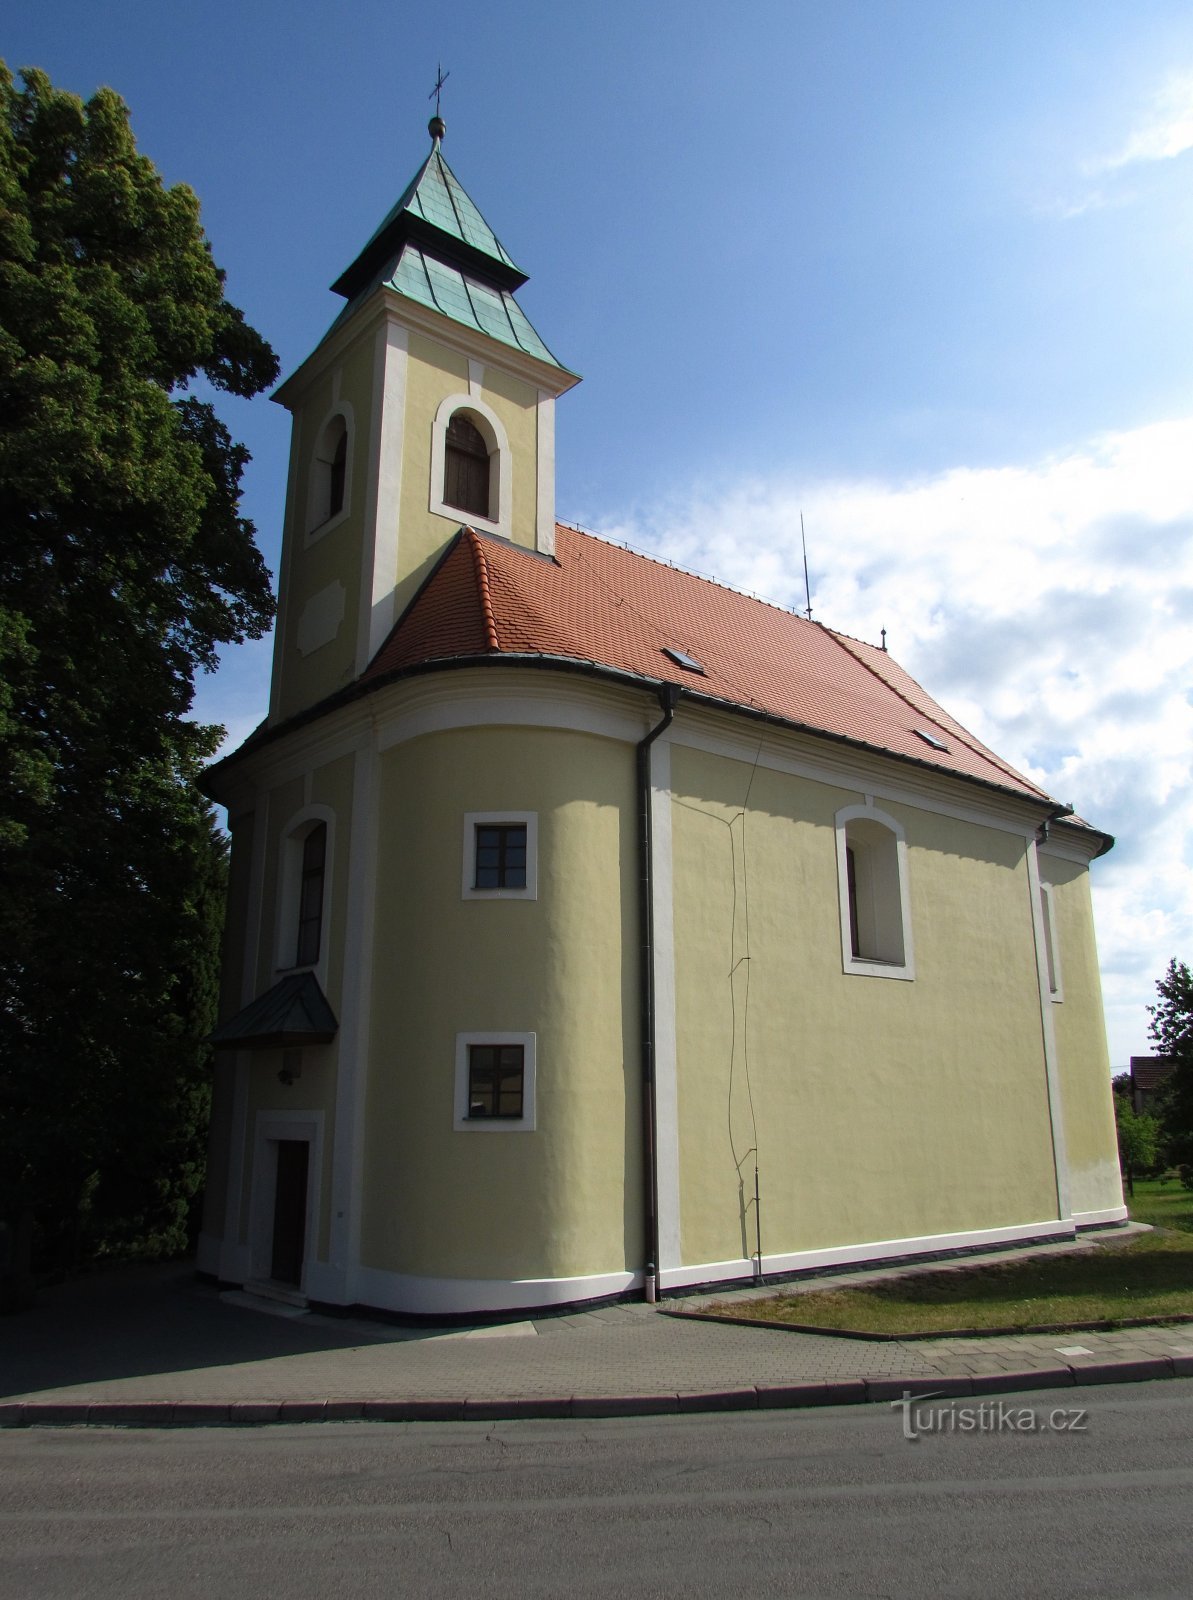 Bukovinka - Igreja da Assunção da Virgem Maria